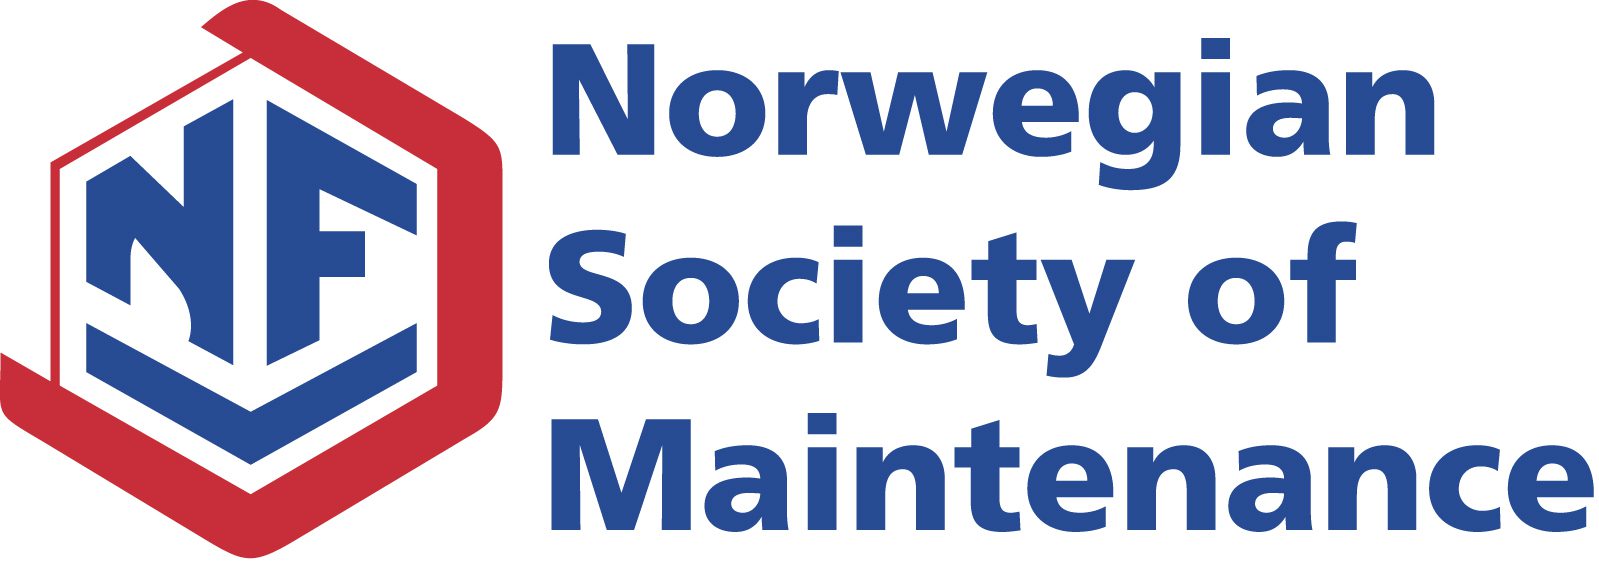 Norwegian-Society-of-Maintenance